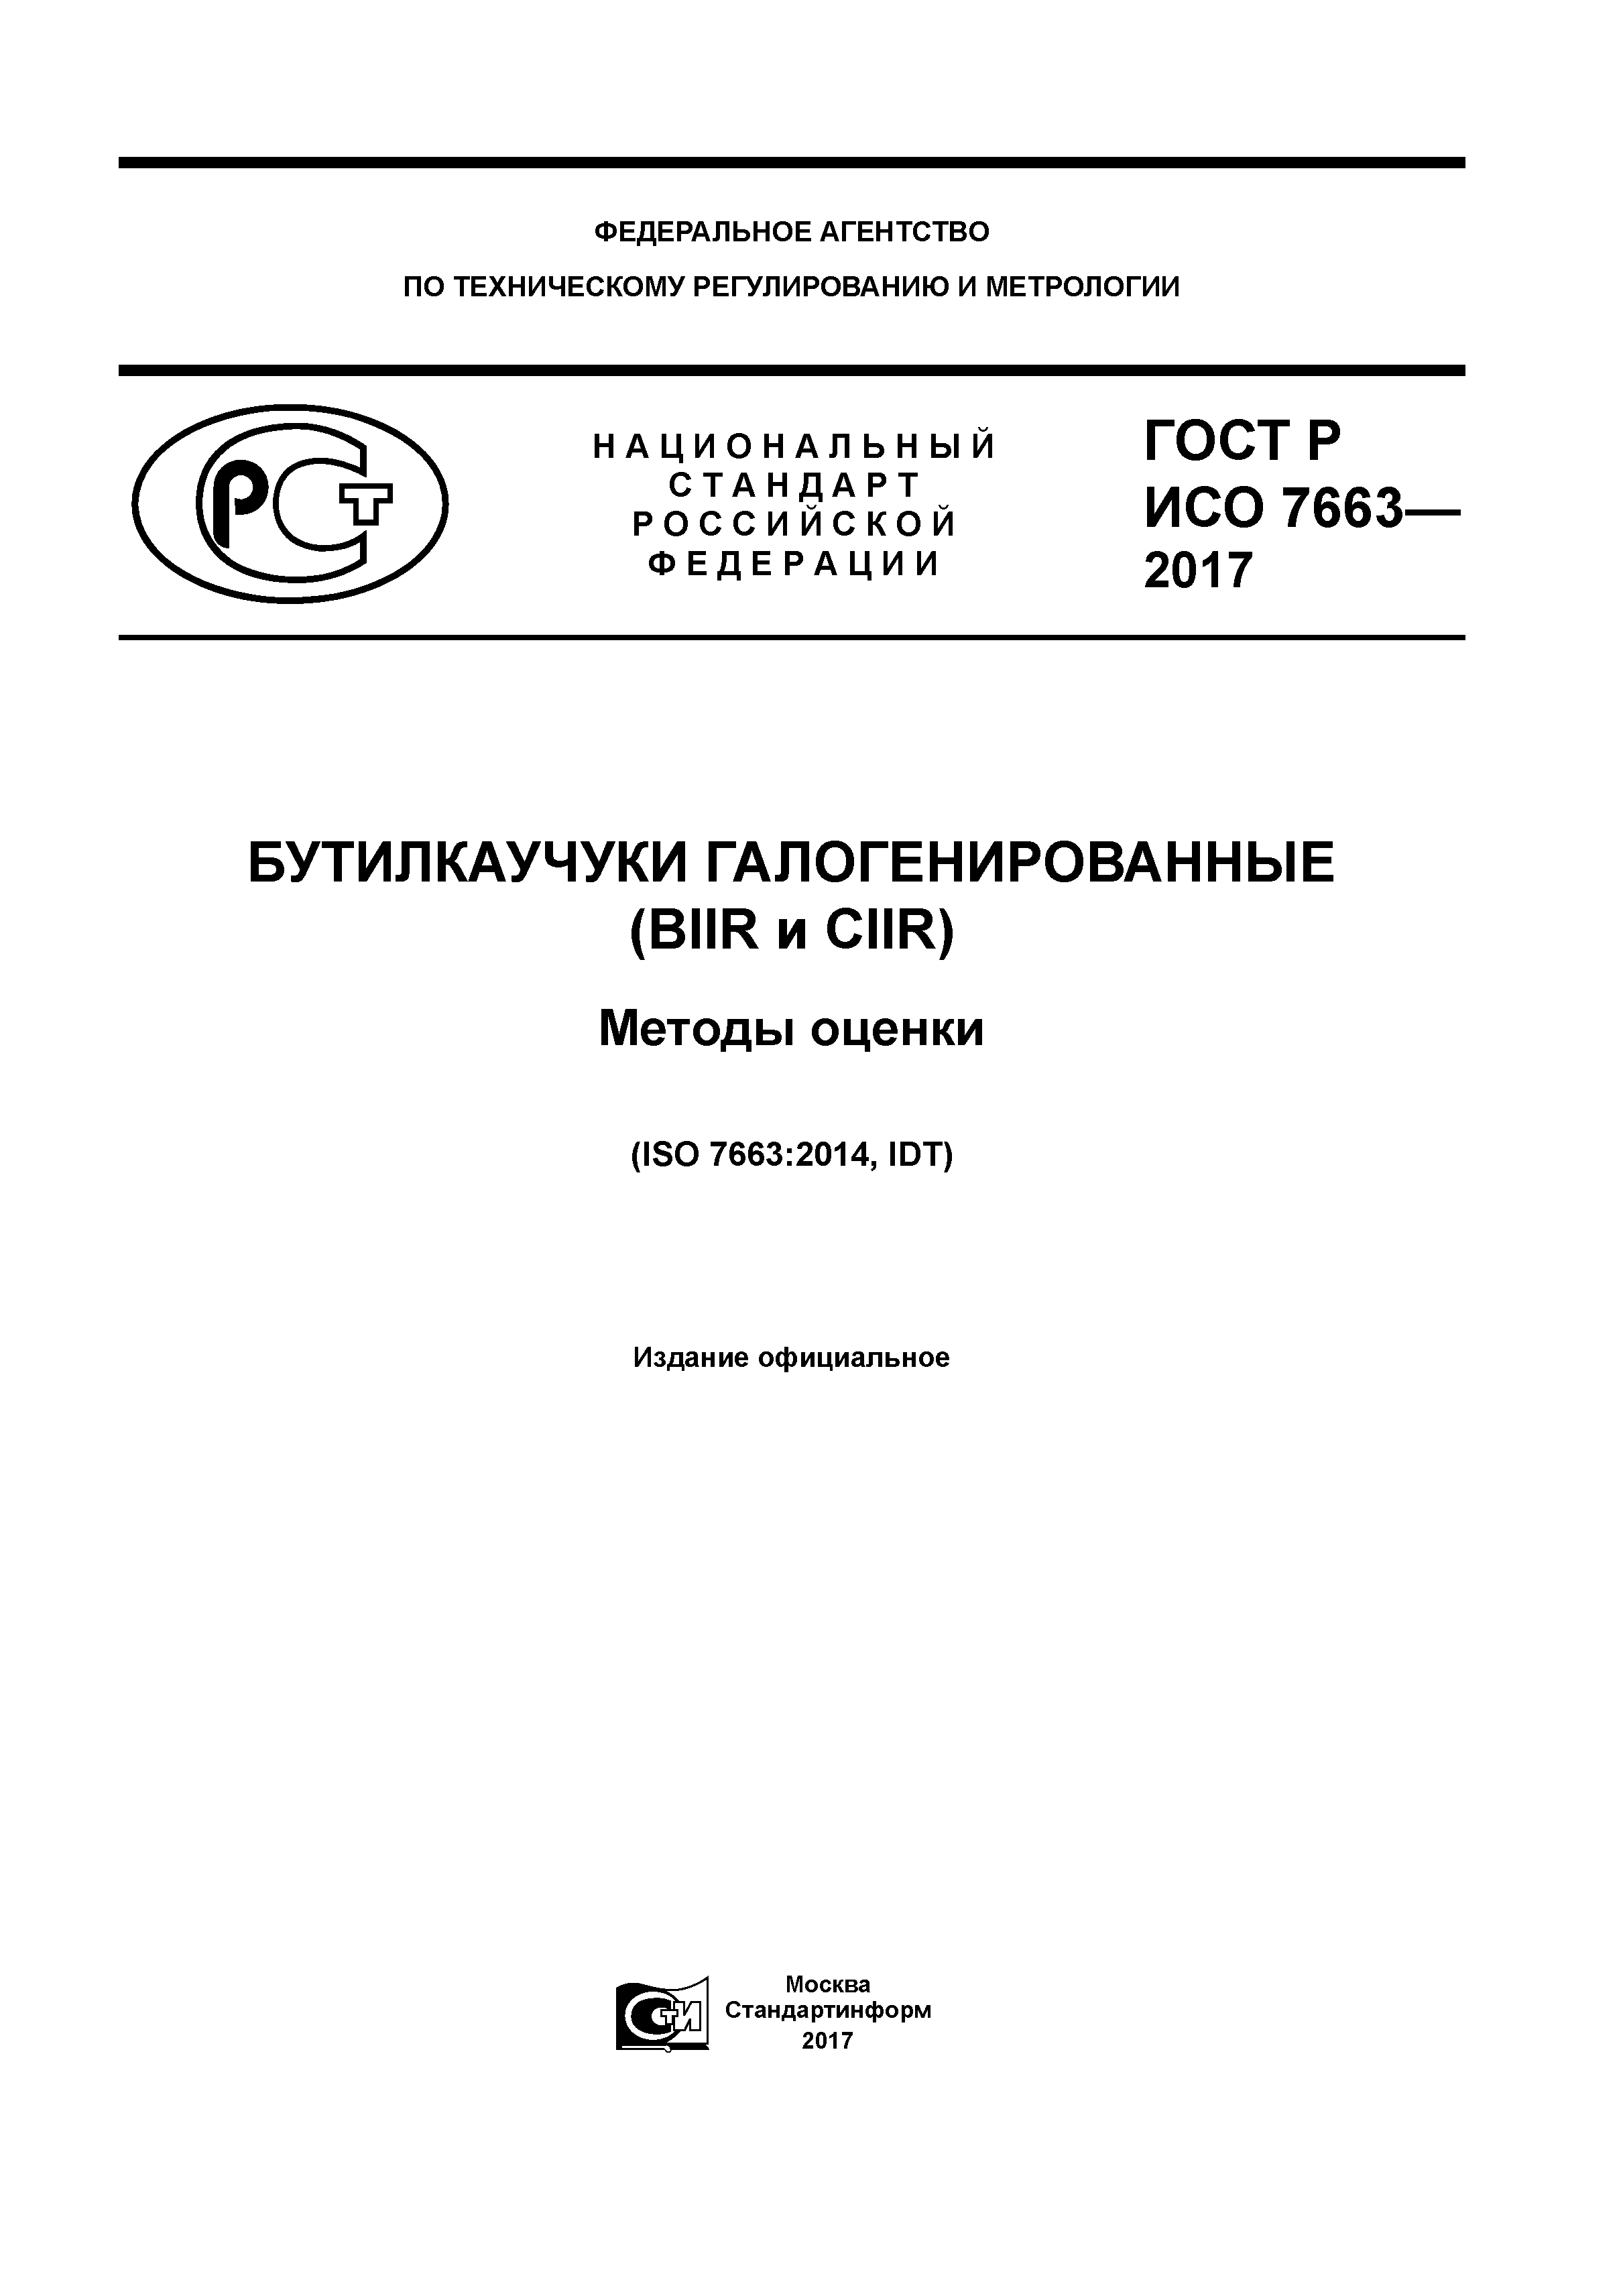 ГОСТ Р ИСО 7663-2017